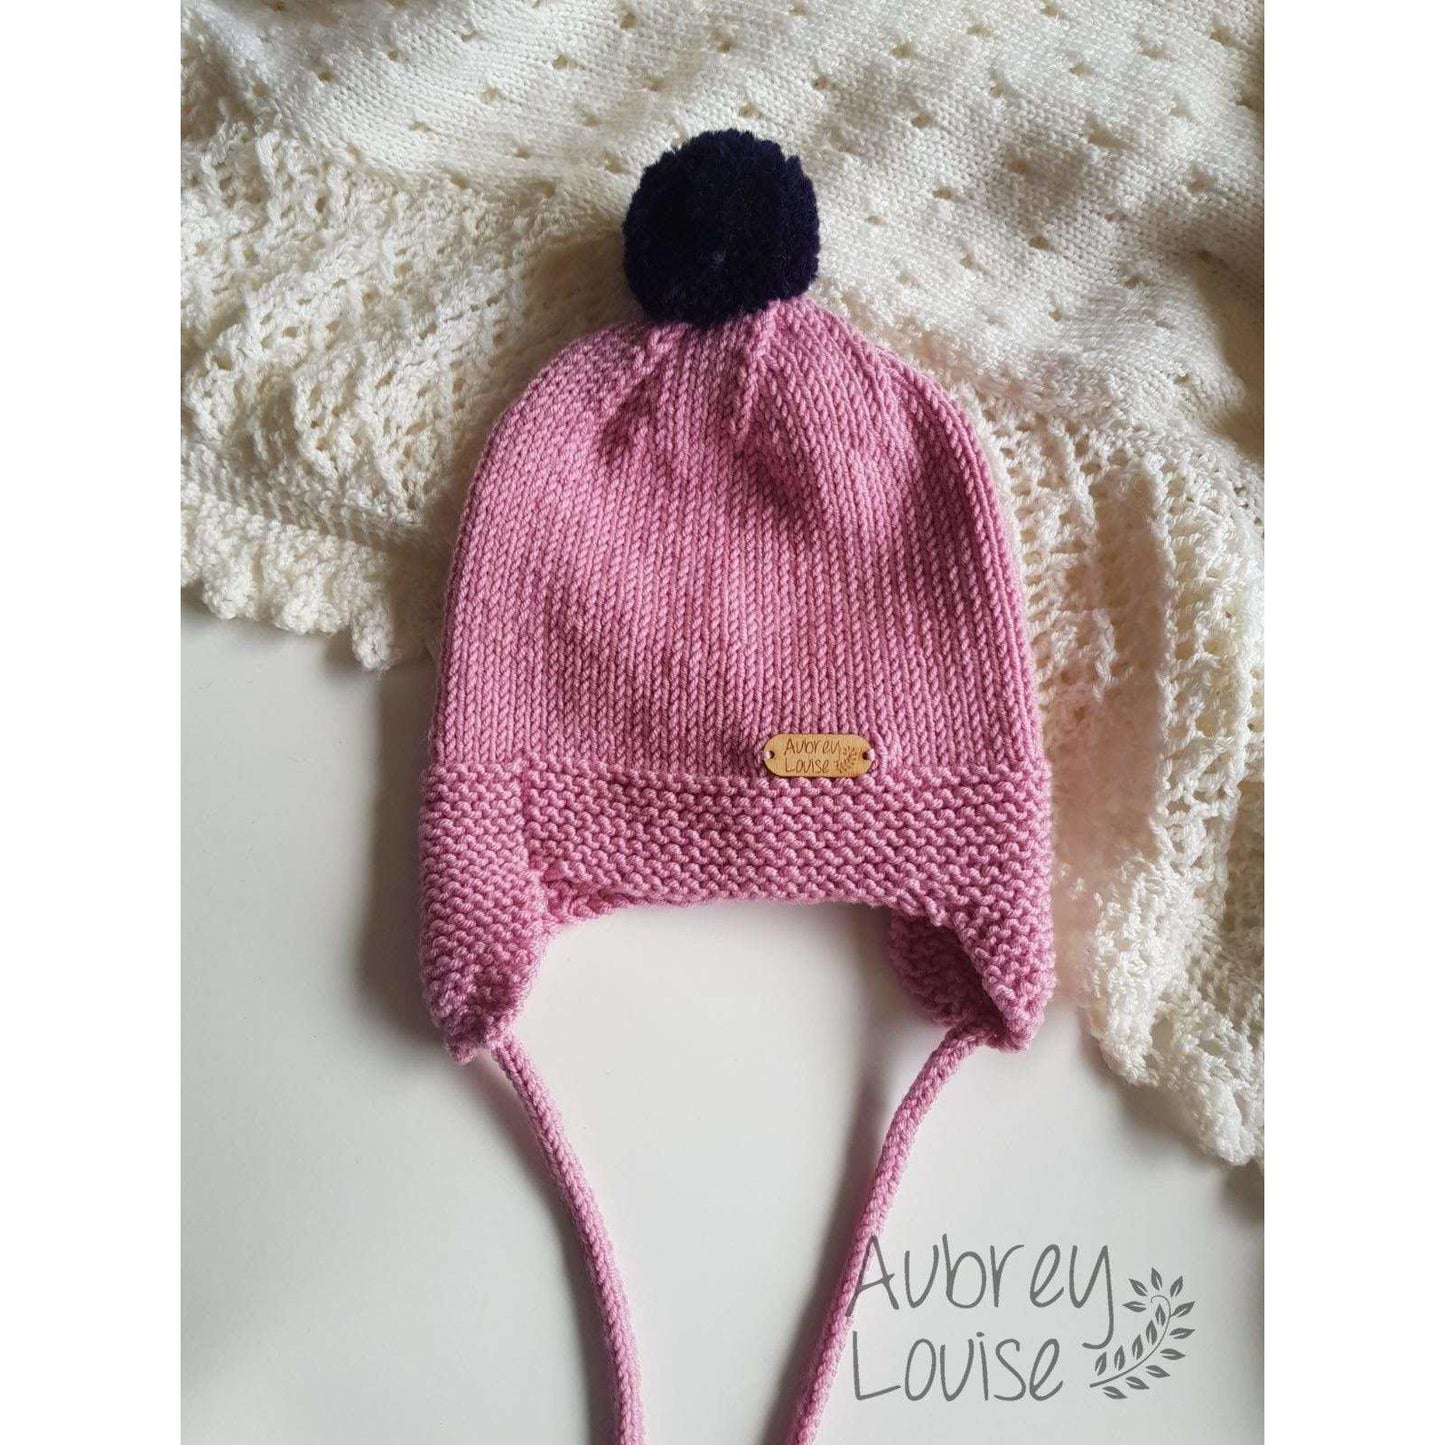 Aubrey Louise Hats/Bonnets 0-3 months Earflap hat